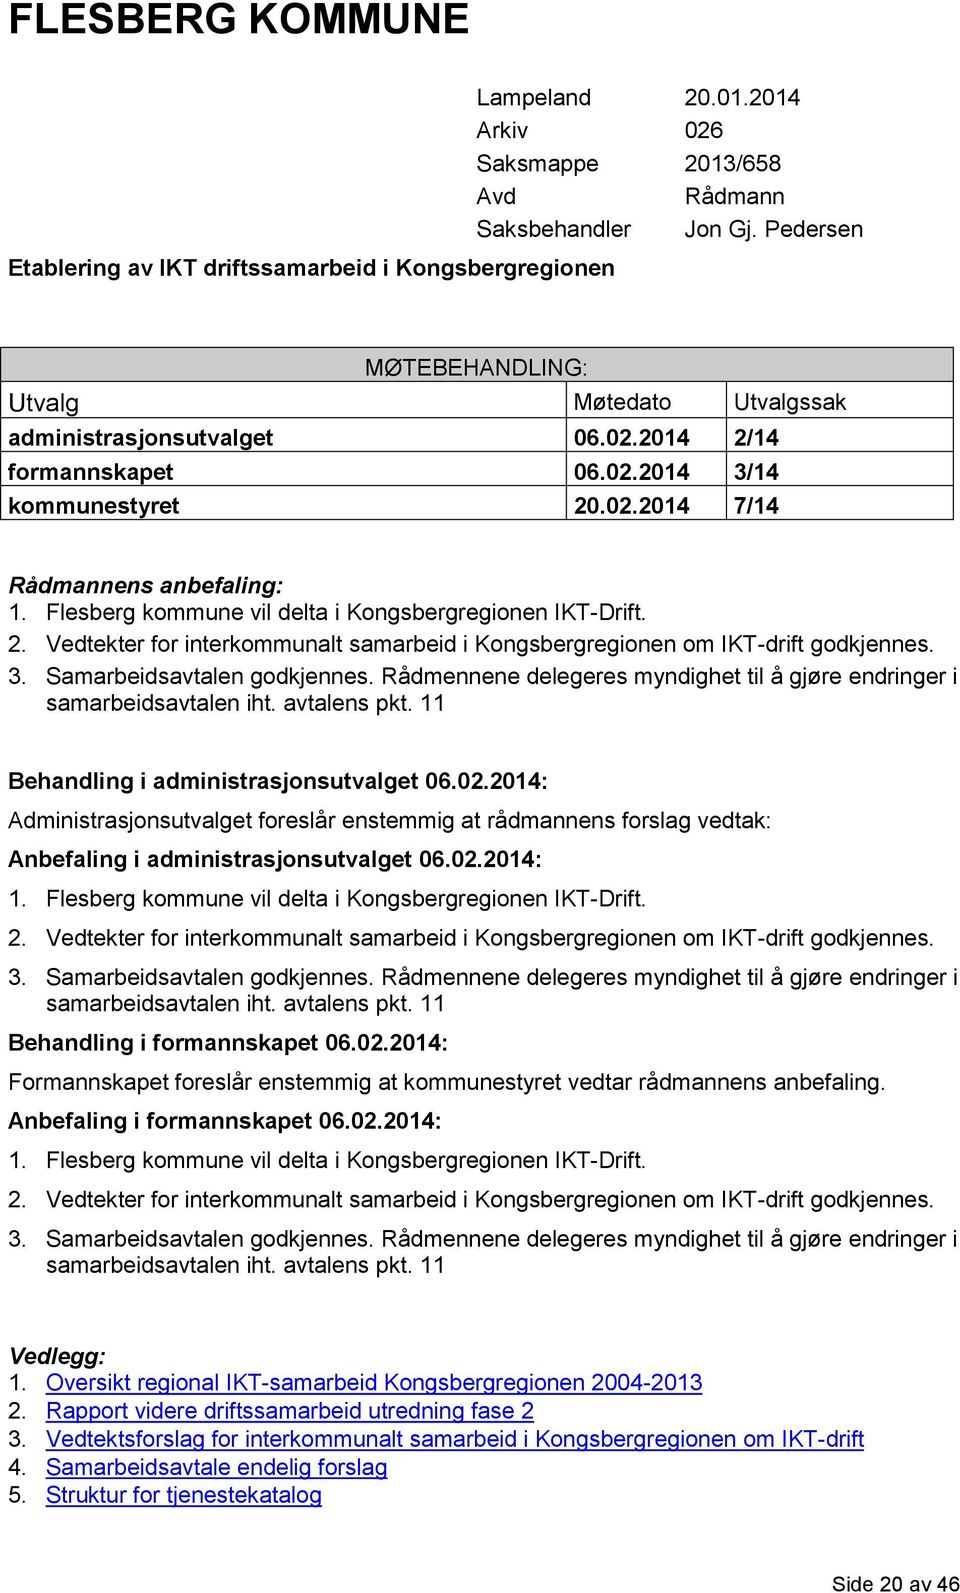 Flesberg kommune vil delta i Kongsbergregionen IKT-Drift. 2. Vedtekter for interkommunalt samarbeid i Kongsbergregionen om IKT-drift godkjennes. 3. Samarbeidsavtalen godkjennes.